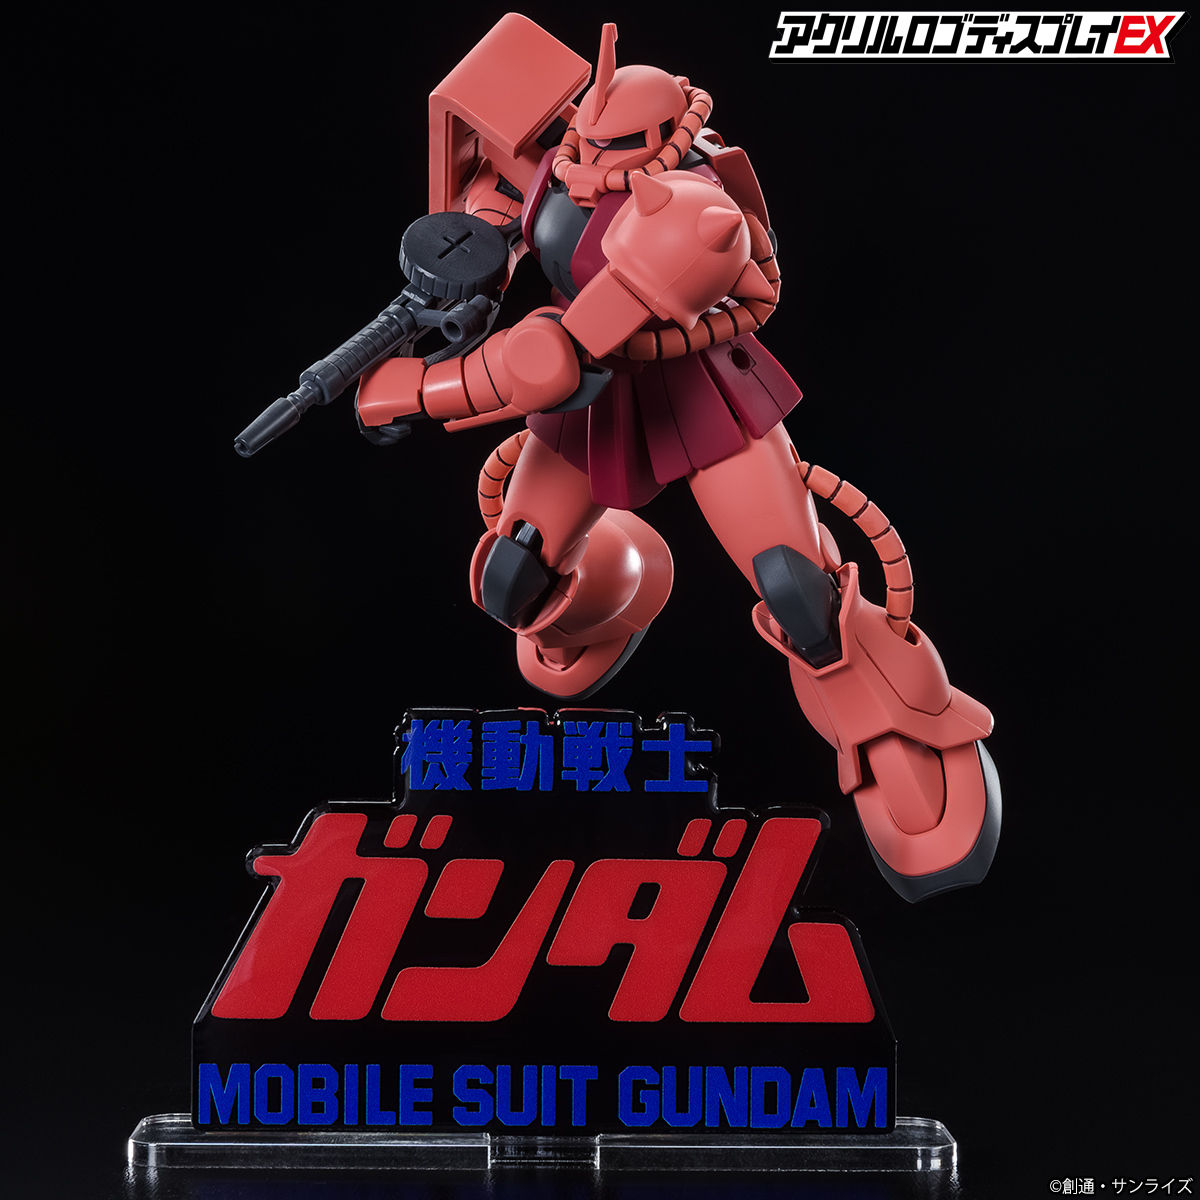 Acrylic Logo Diplay EX-Mobile Suit Gundam Movie Ⅰ